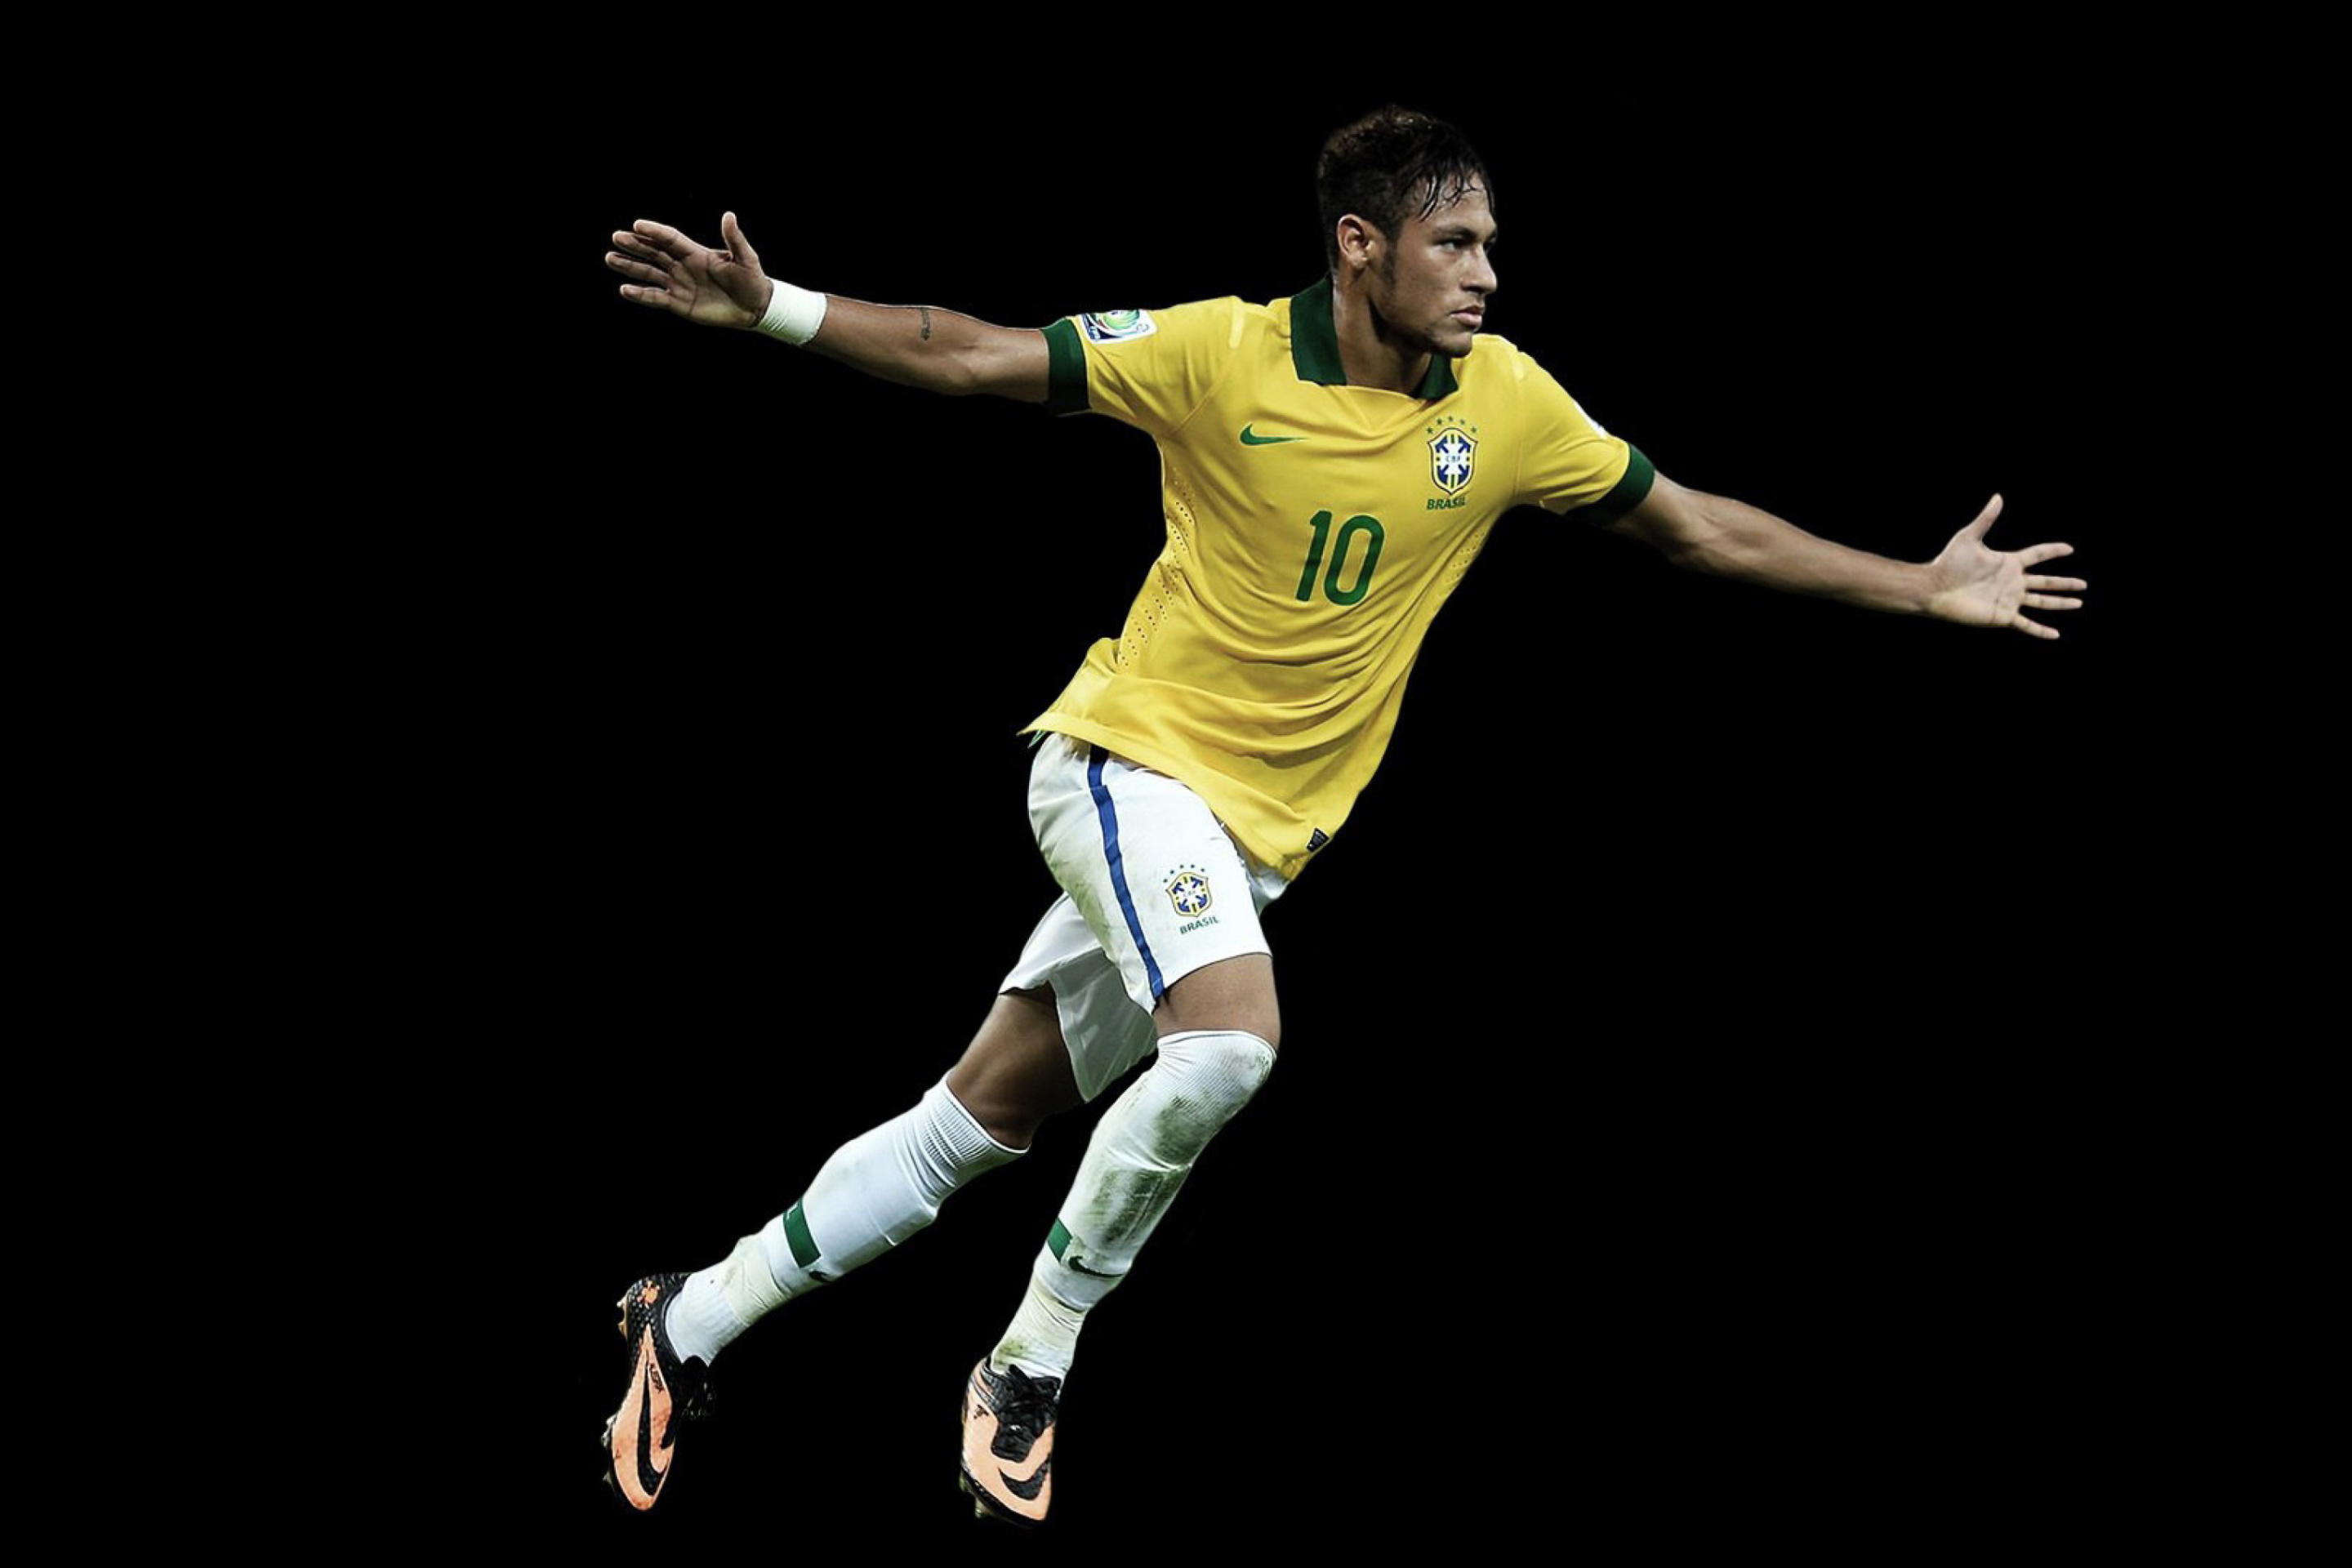 Das Neymar Brazil Football Player Wallpaper 2880x1920